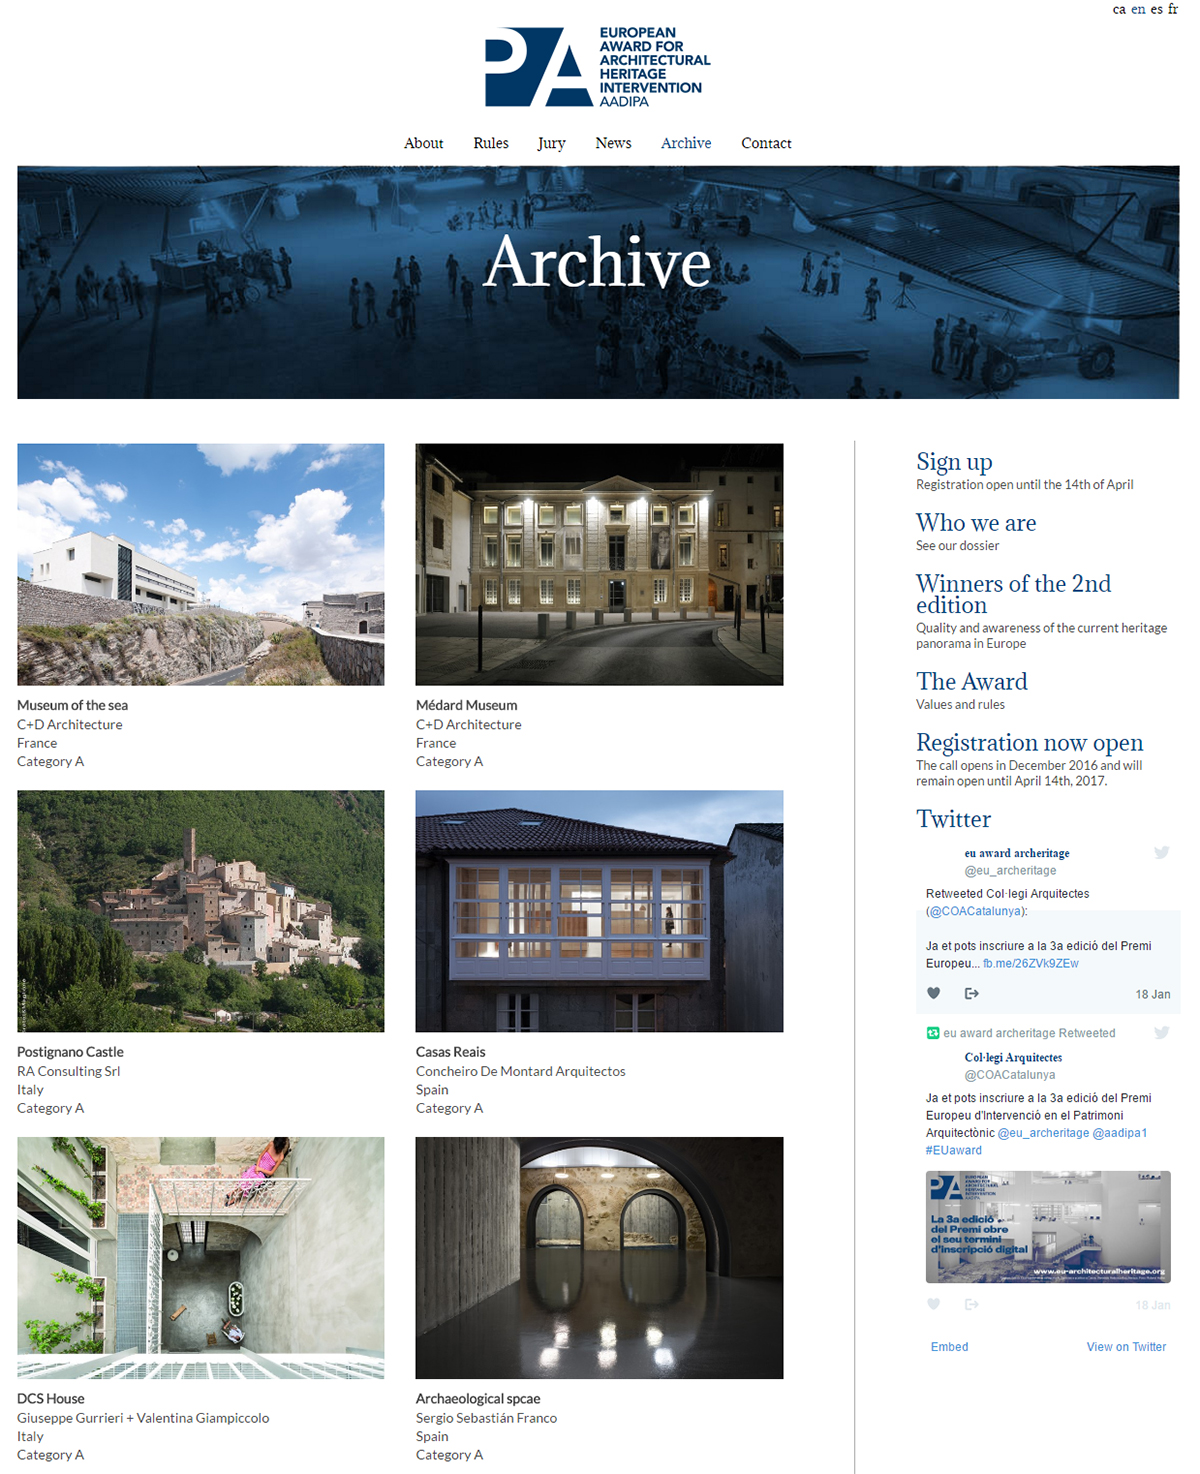 Un arxiu sobre la intervenció en el patrimoni arquitectònic europeu